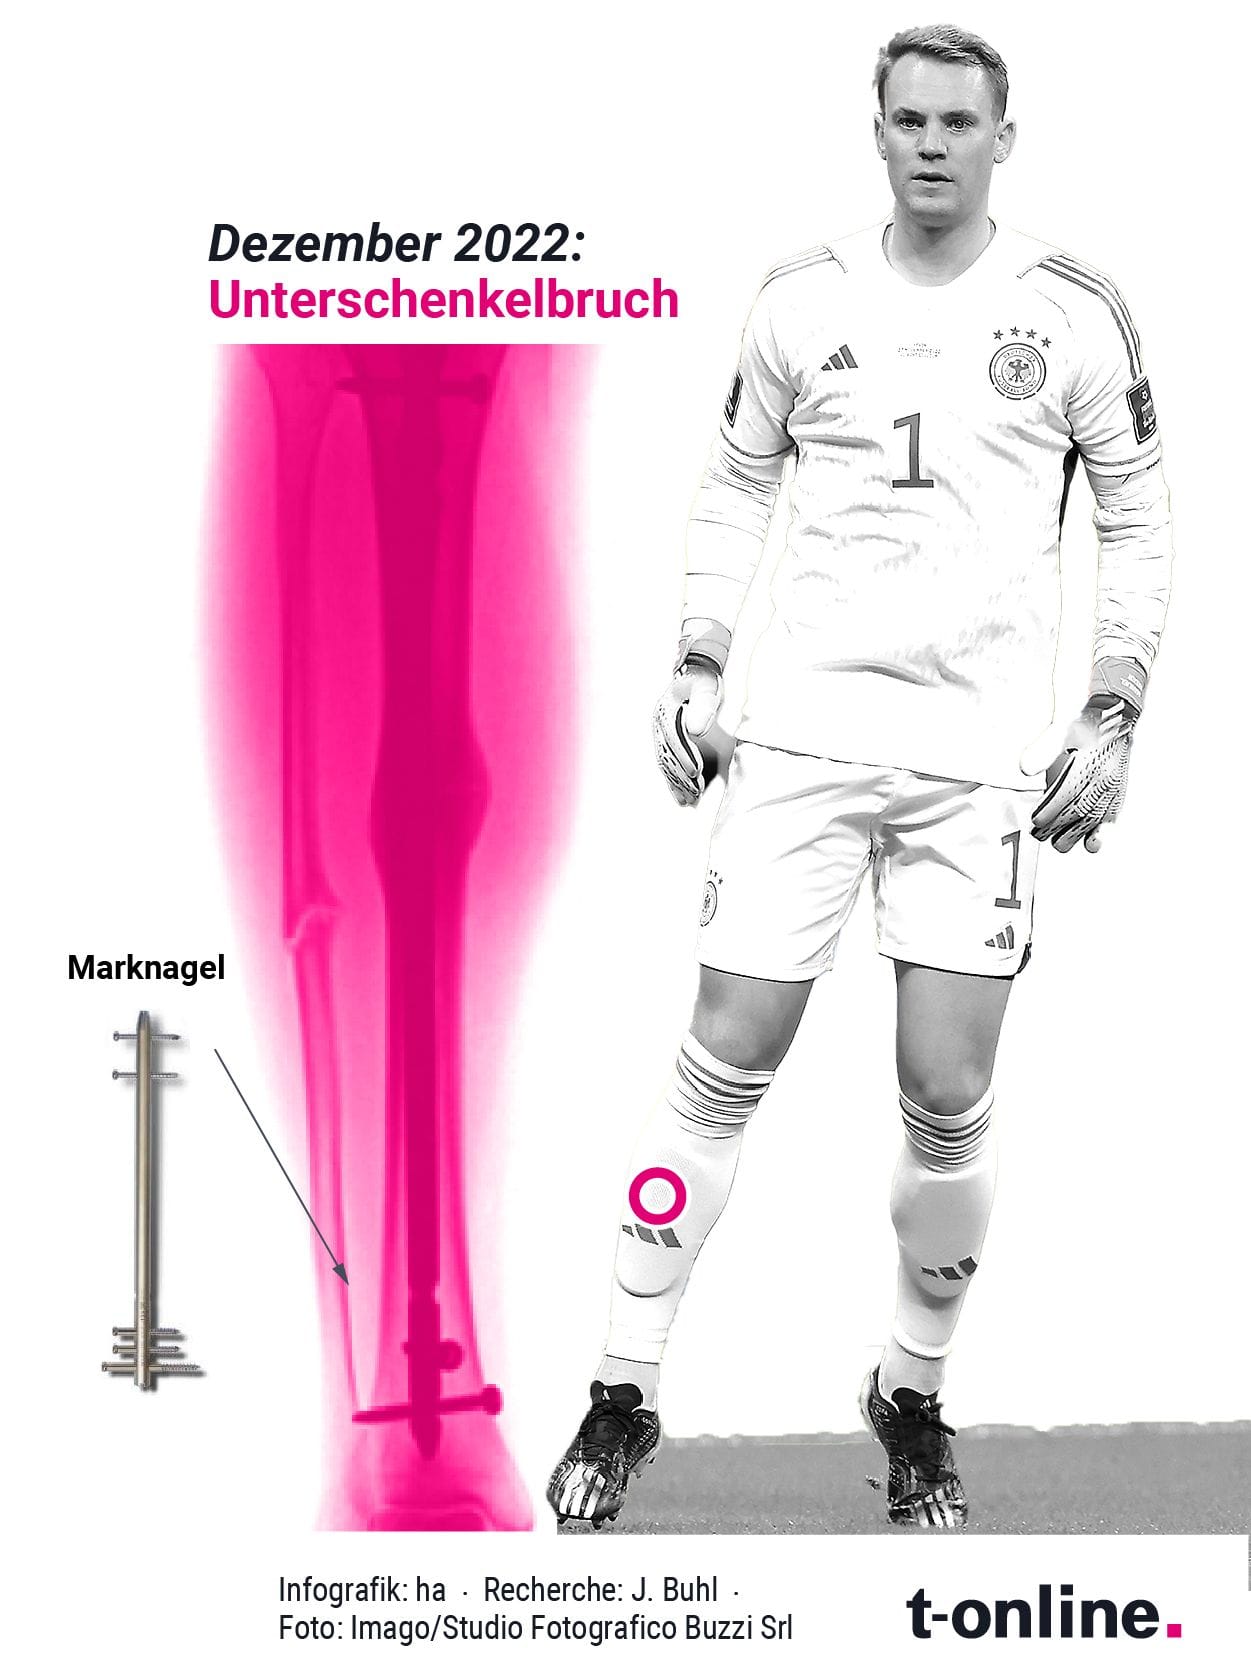 Manuel Neuer: Bei einem Unterschenkelbruch, wie ihn der Torhüter des FC Bayern erlitten hat, ist das Einsetzen eines sogenannten Marknagels in den Knochen ein in der Orthopädie gängiges Verfahren.